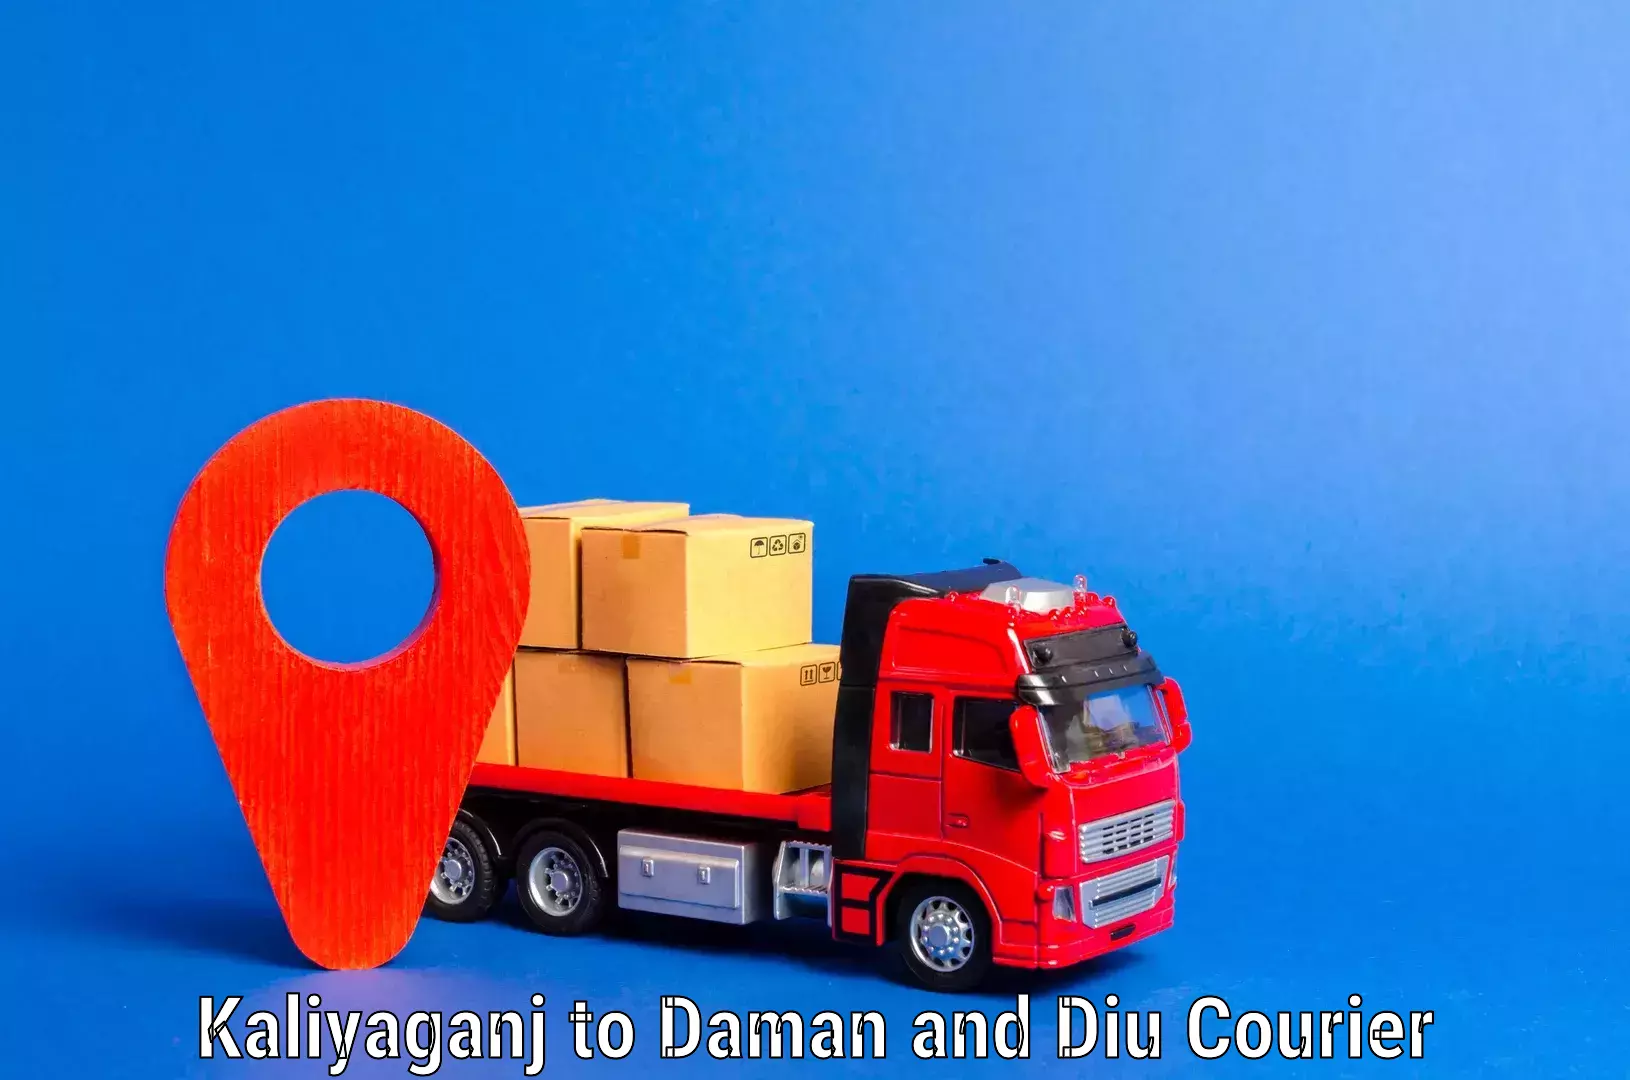 Furniture moving and handling Kaliyaganj to Daman and Diu